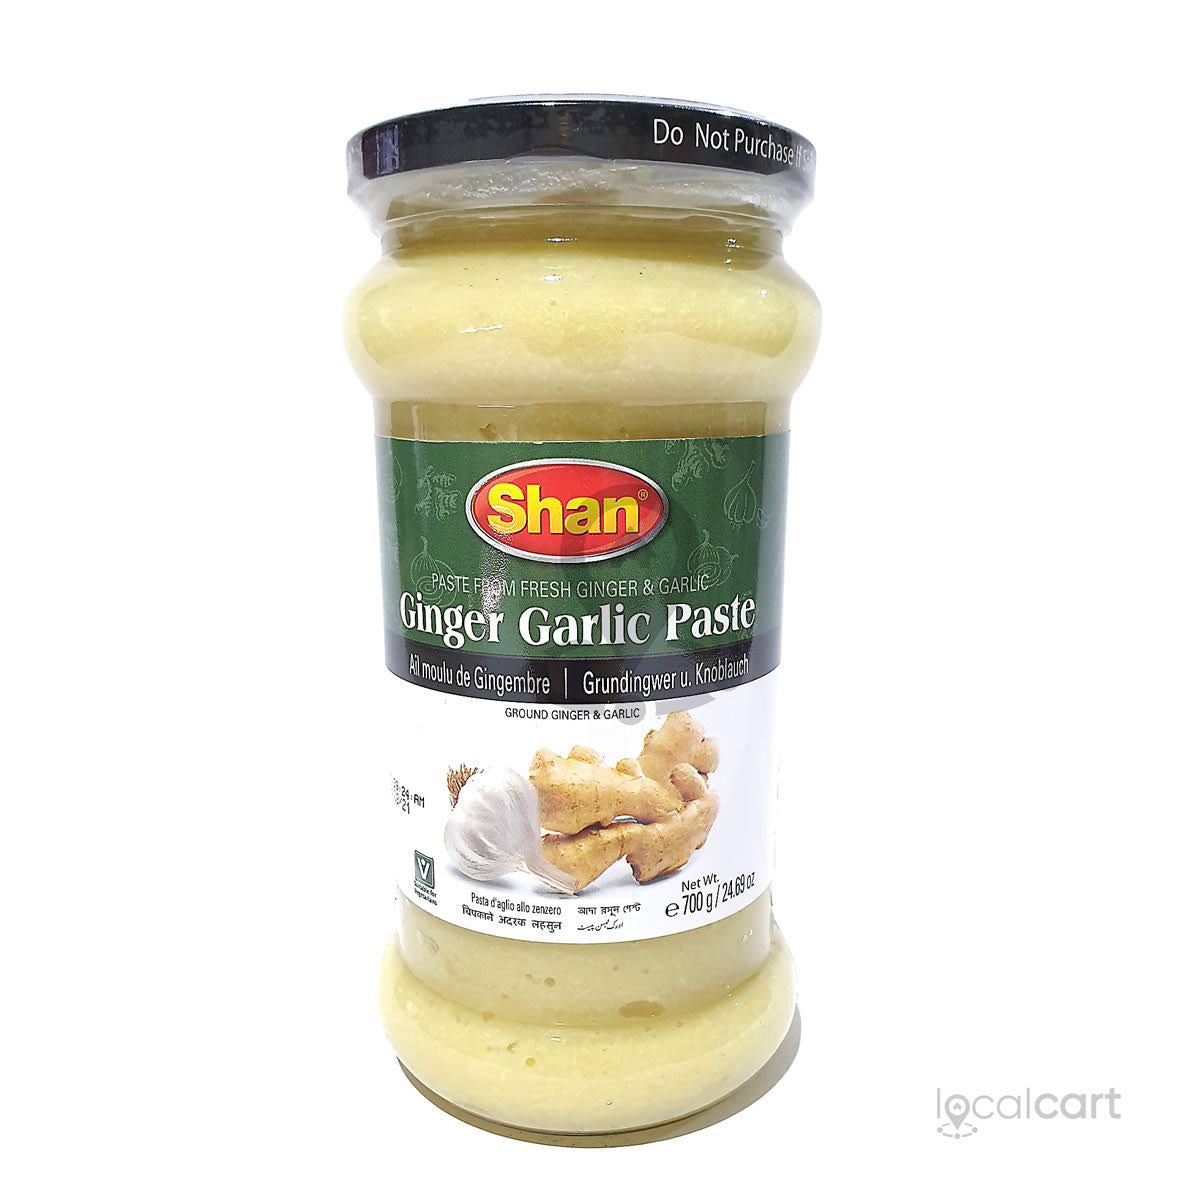 Shan - Ginger Garlic Paste - 700g, Premium Quality